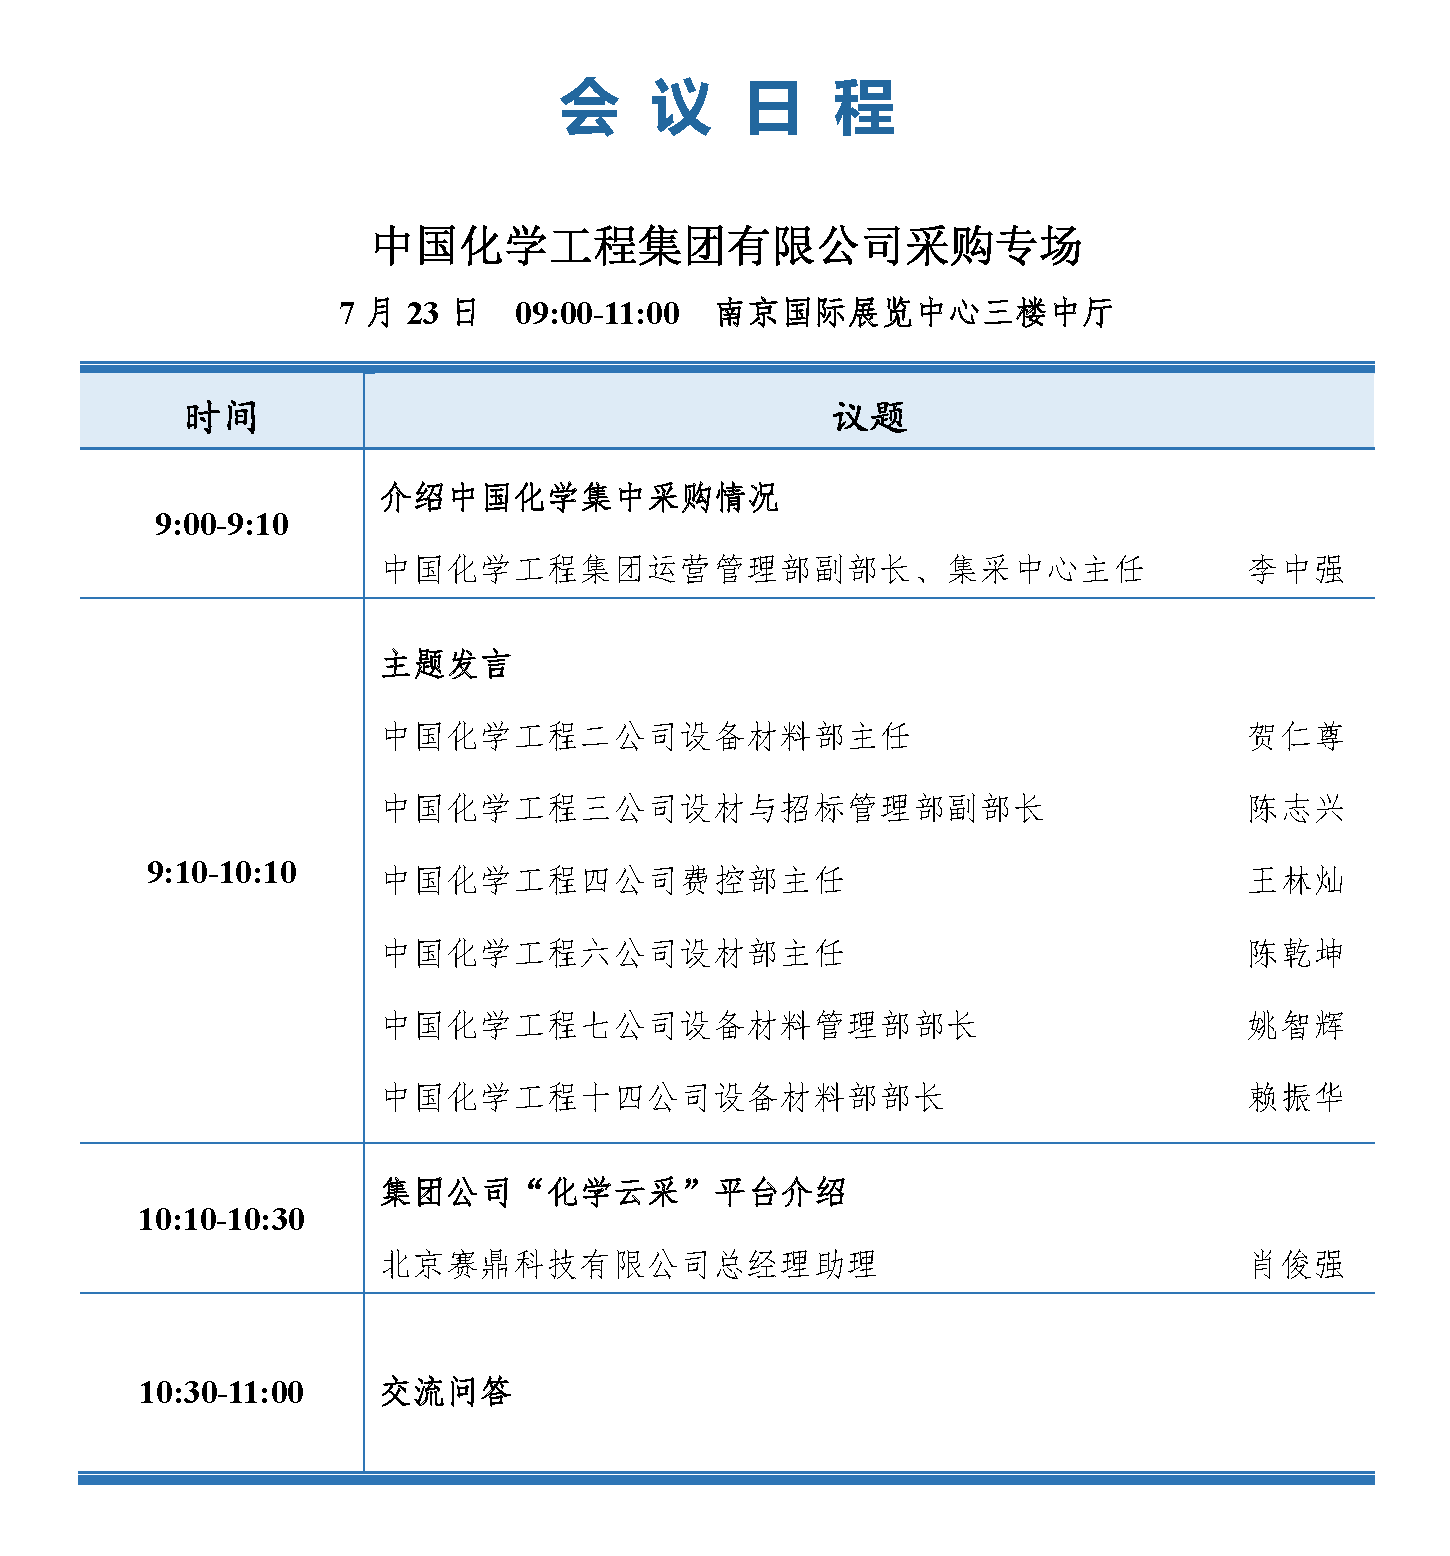 会议手册-2021中国石化行业采购大会_页面_16.png